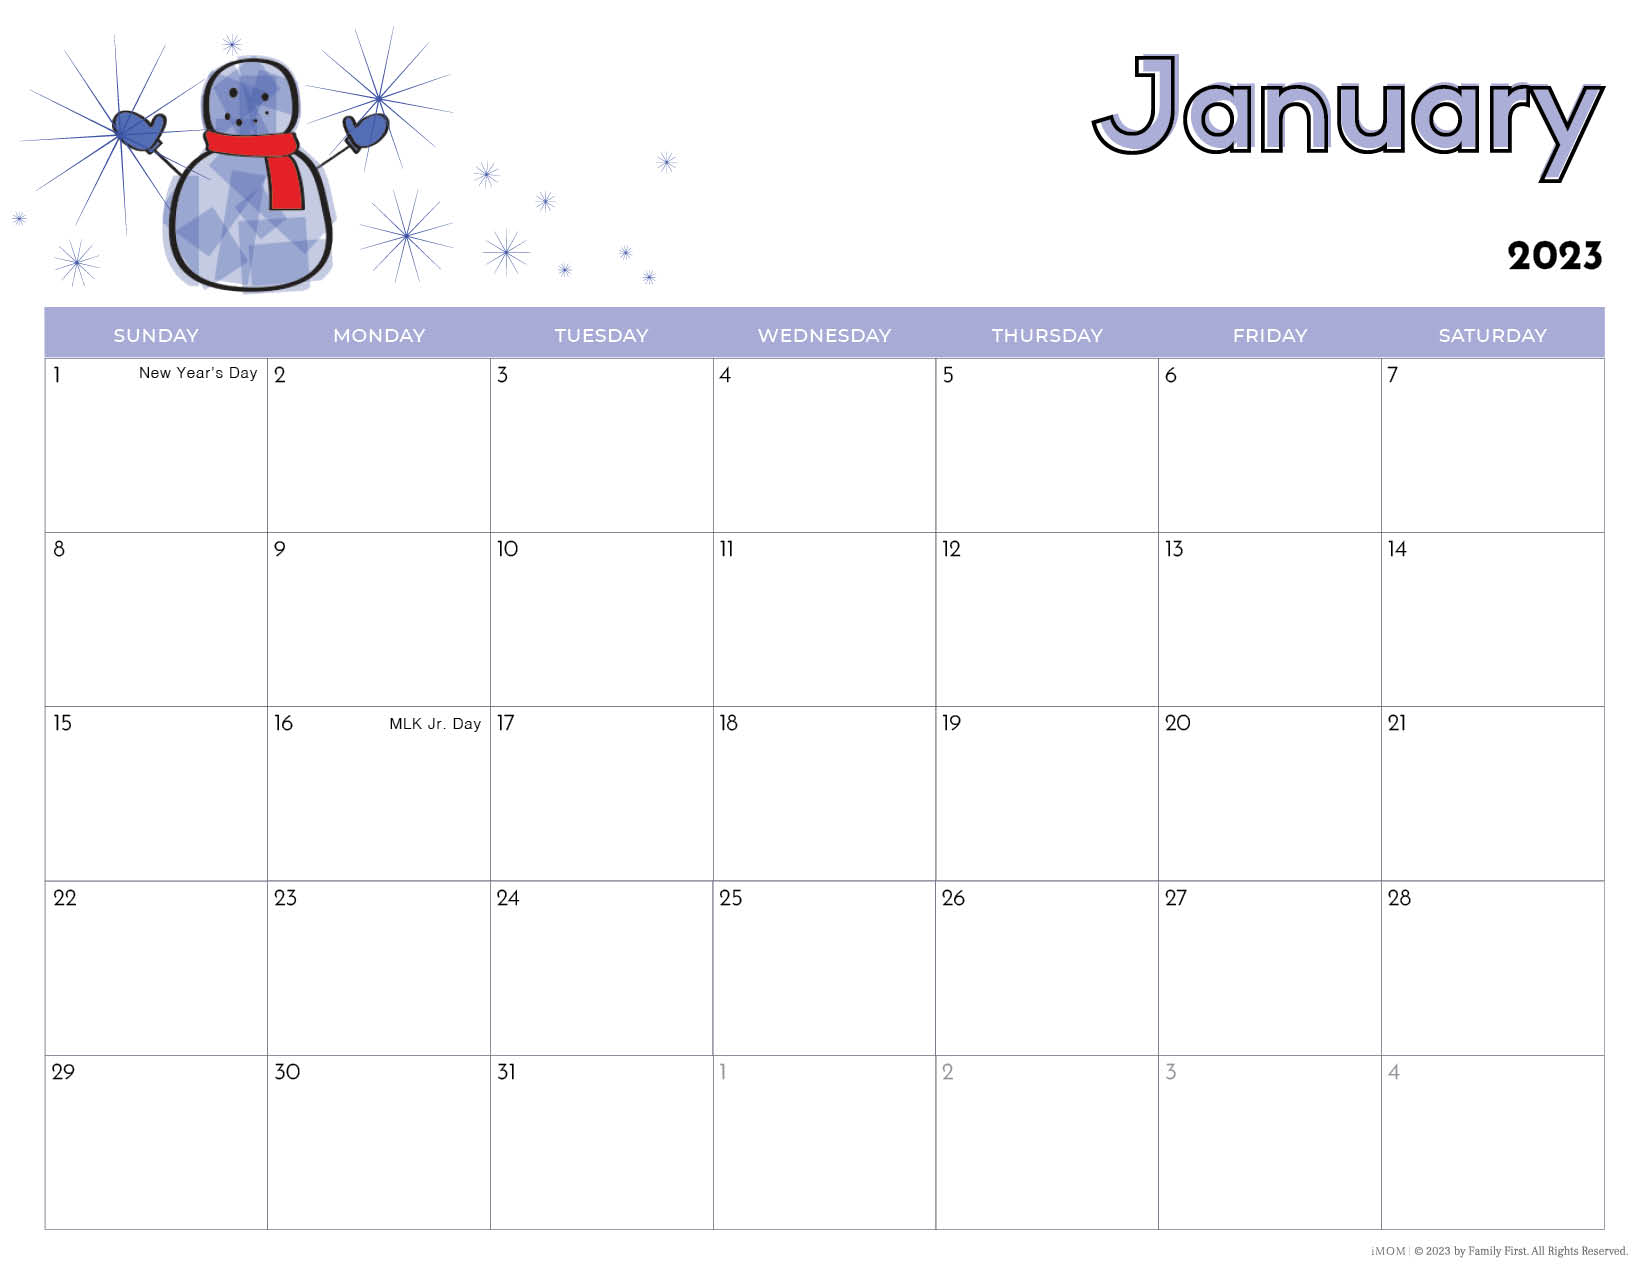 2023 Printable Calendars For Kids - Imom